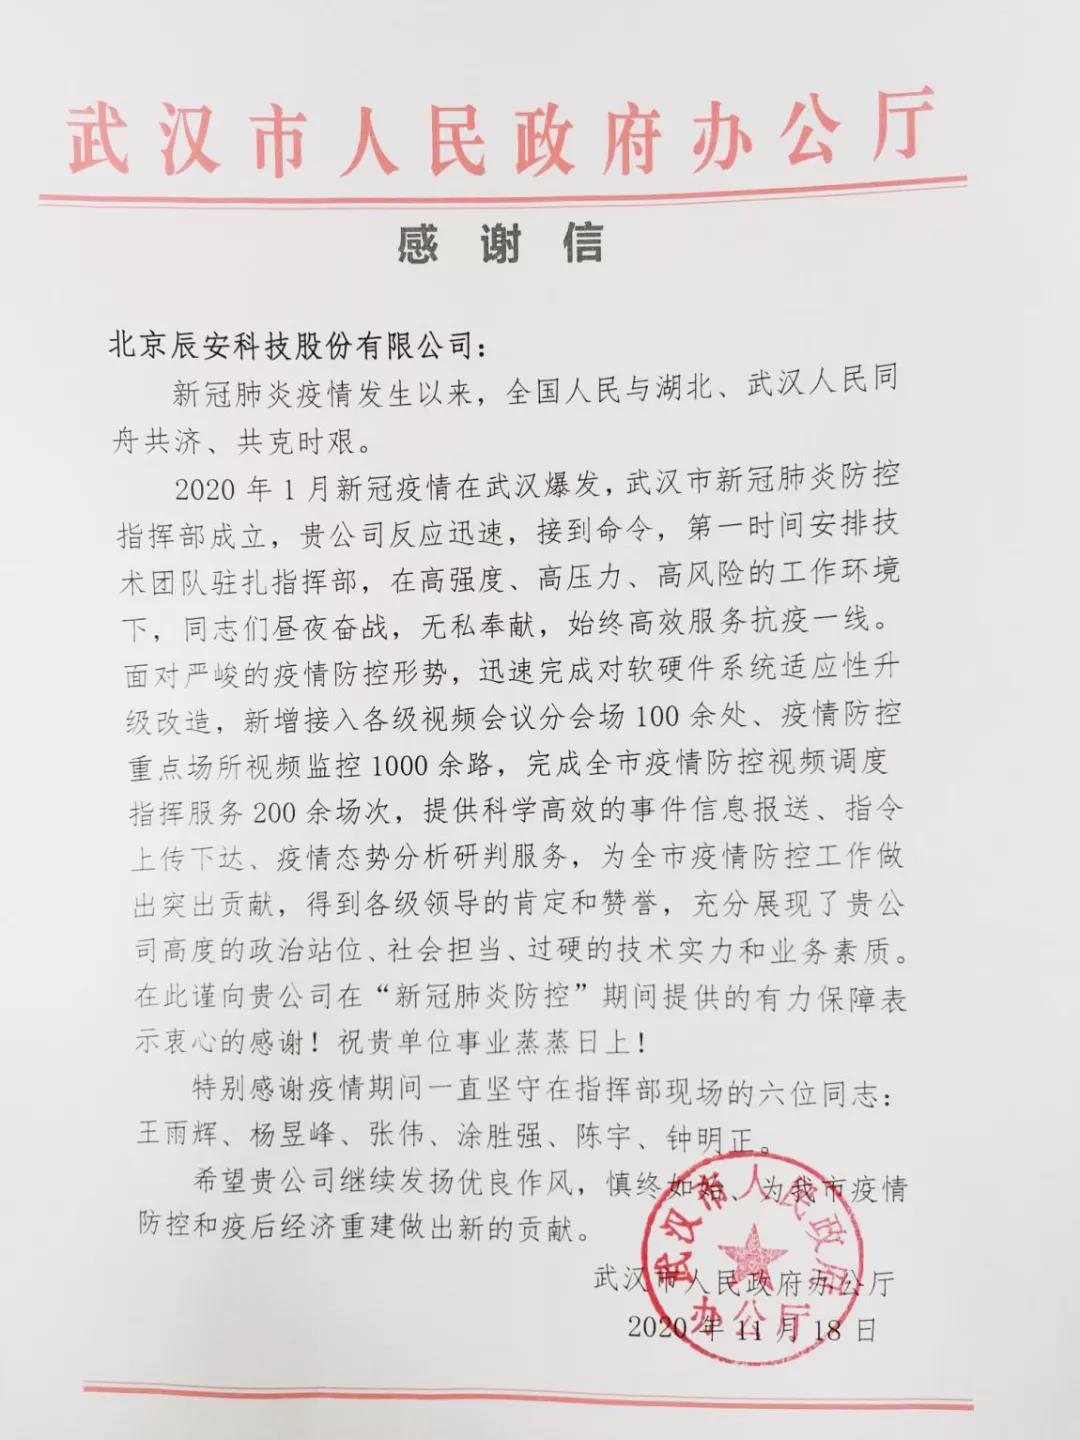 辰安科技获武汉市人民政府感谢信，抗疫服务赢得赞誉！